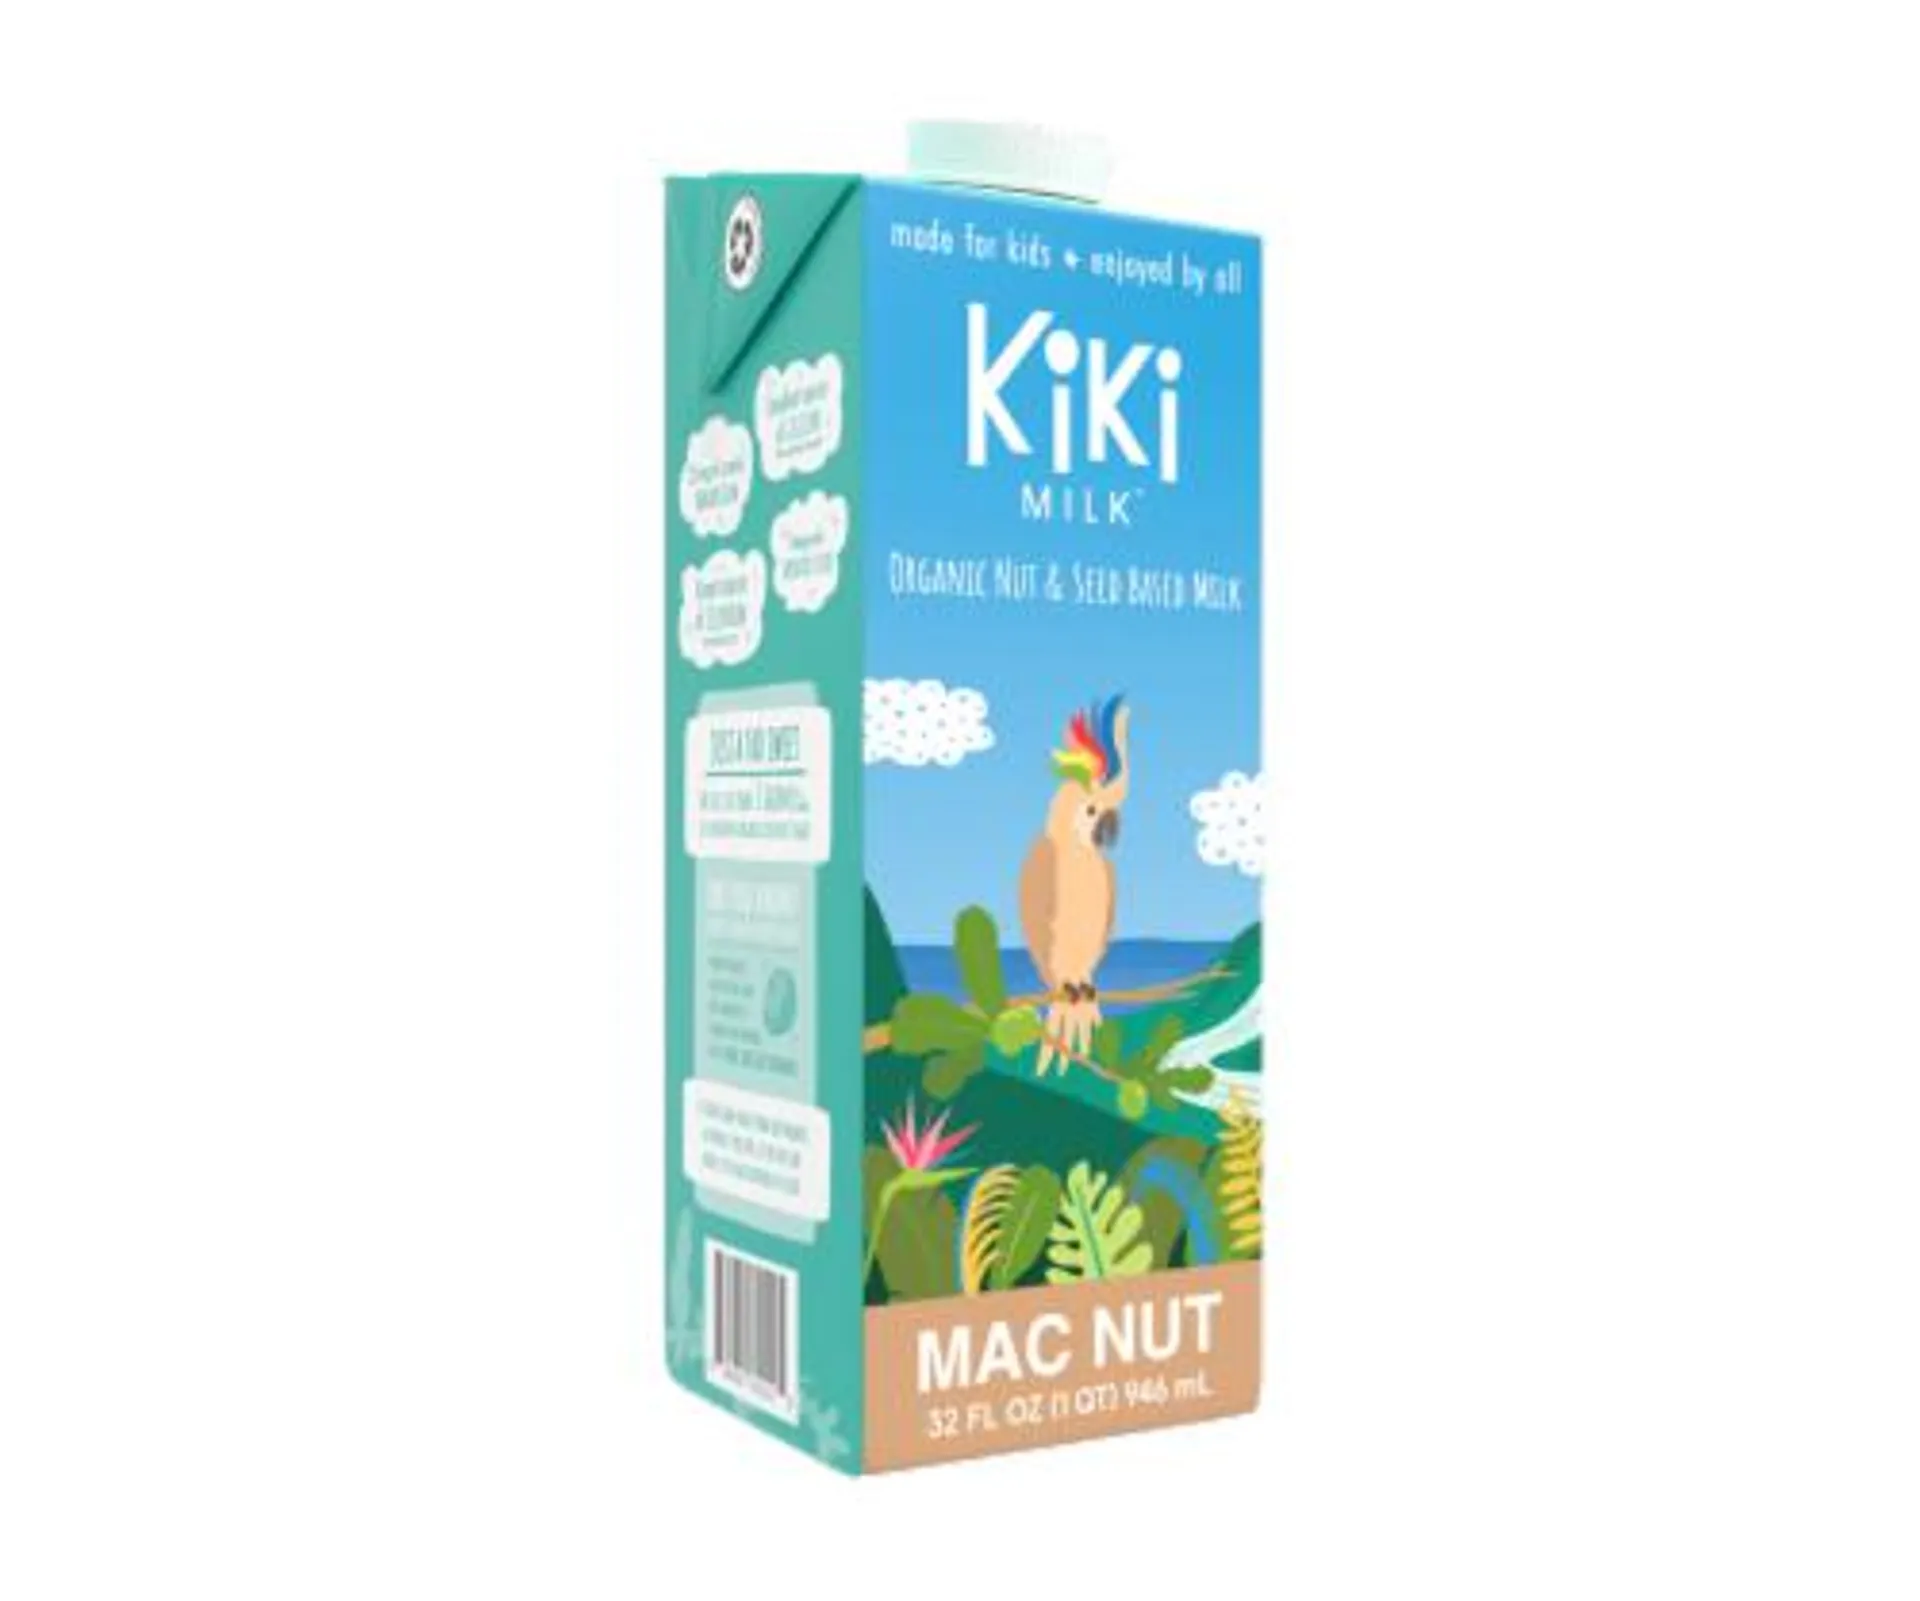 Kiki Milk - Mac Nut Kiki Milk 32 fl oz Pack of 6